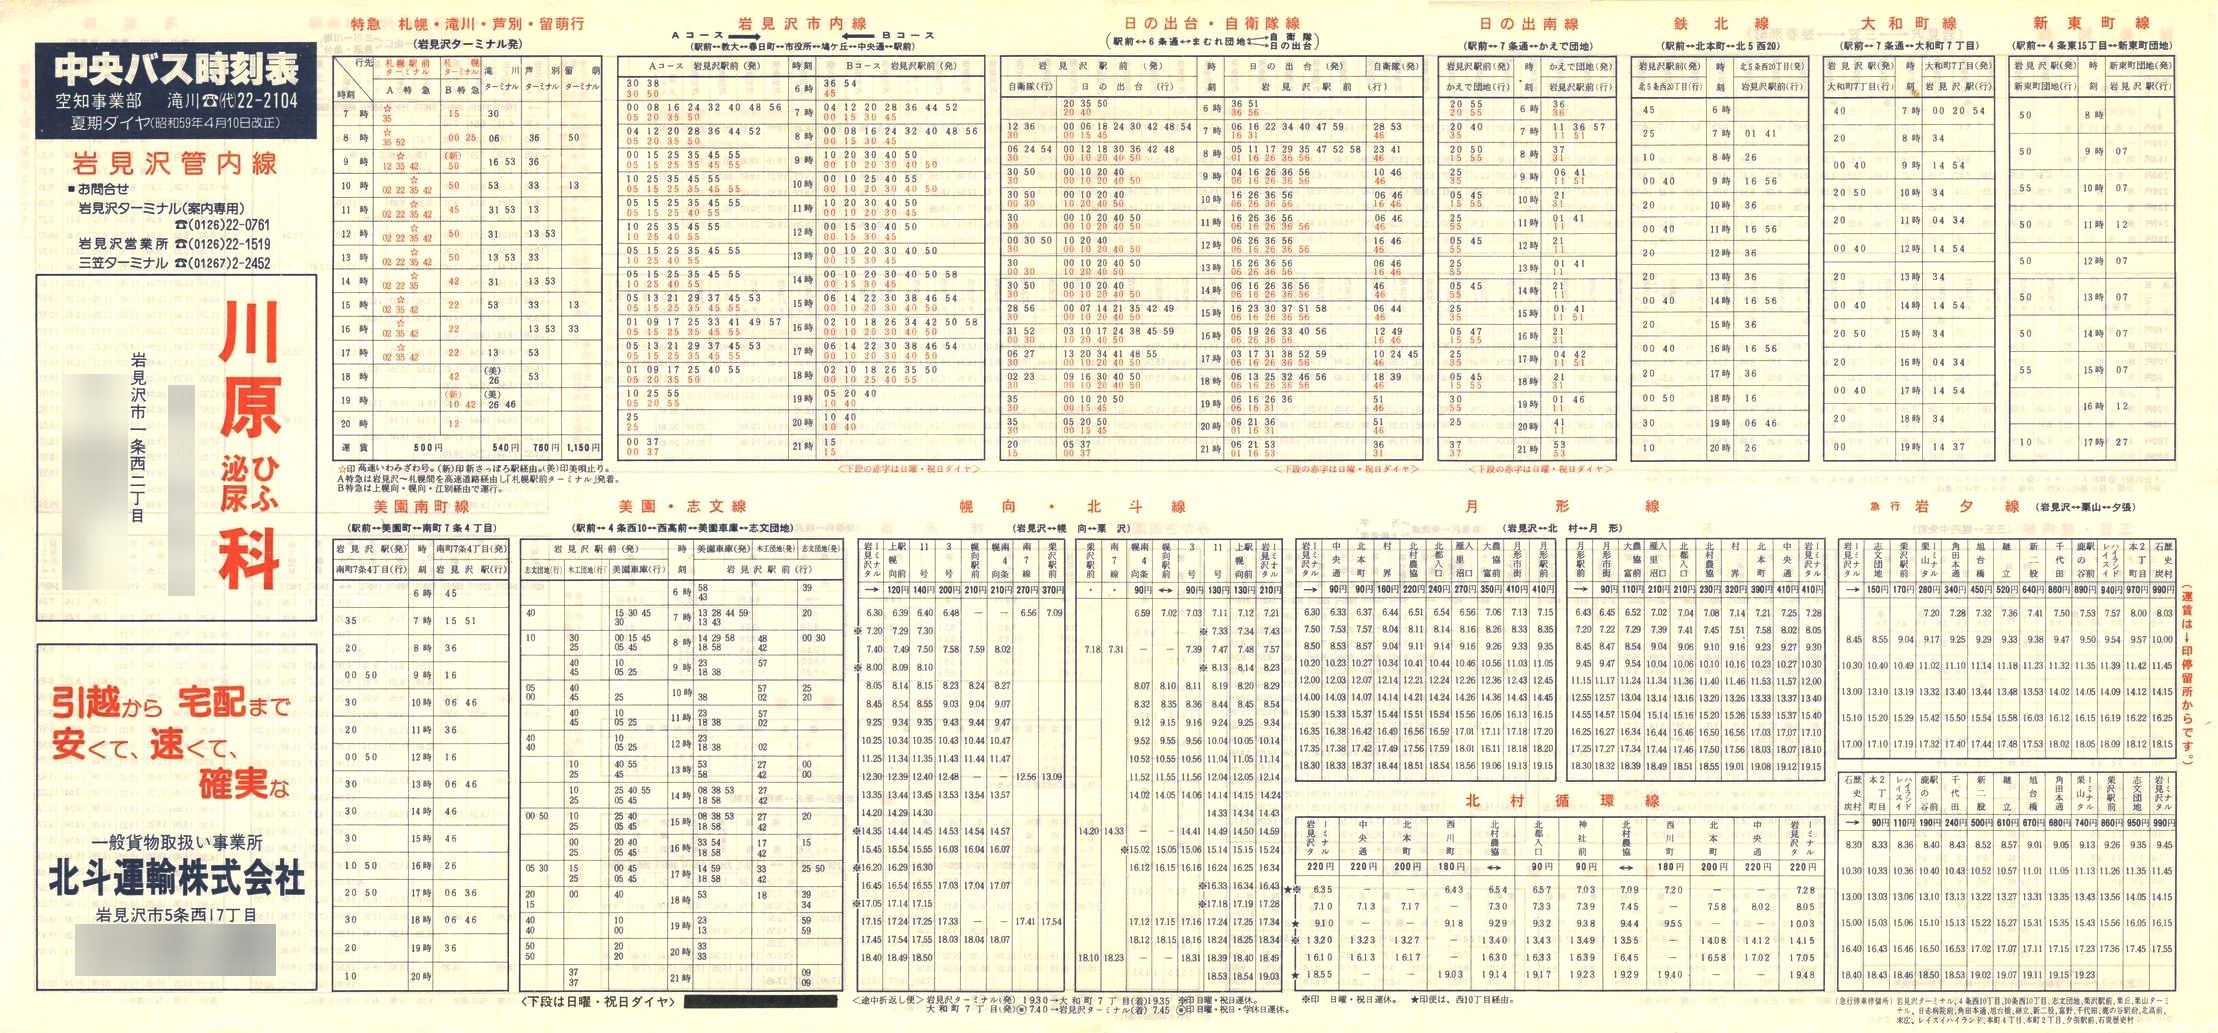 1984-04-10改正_北海道中央バス(空知)_岩見沢管内線時刻表表面